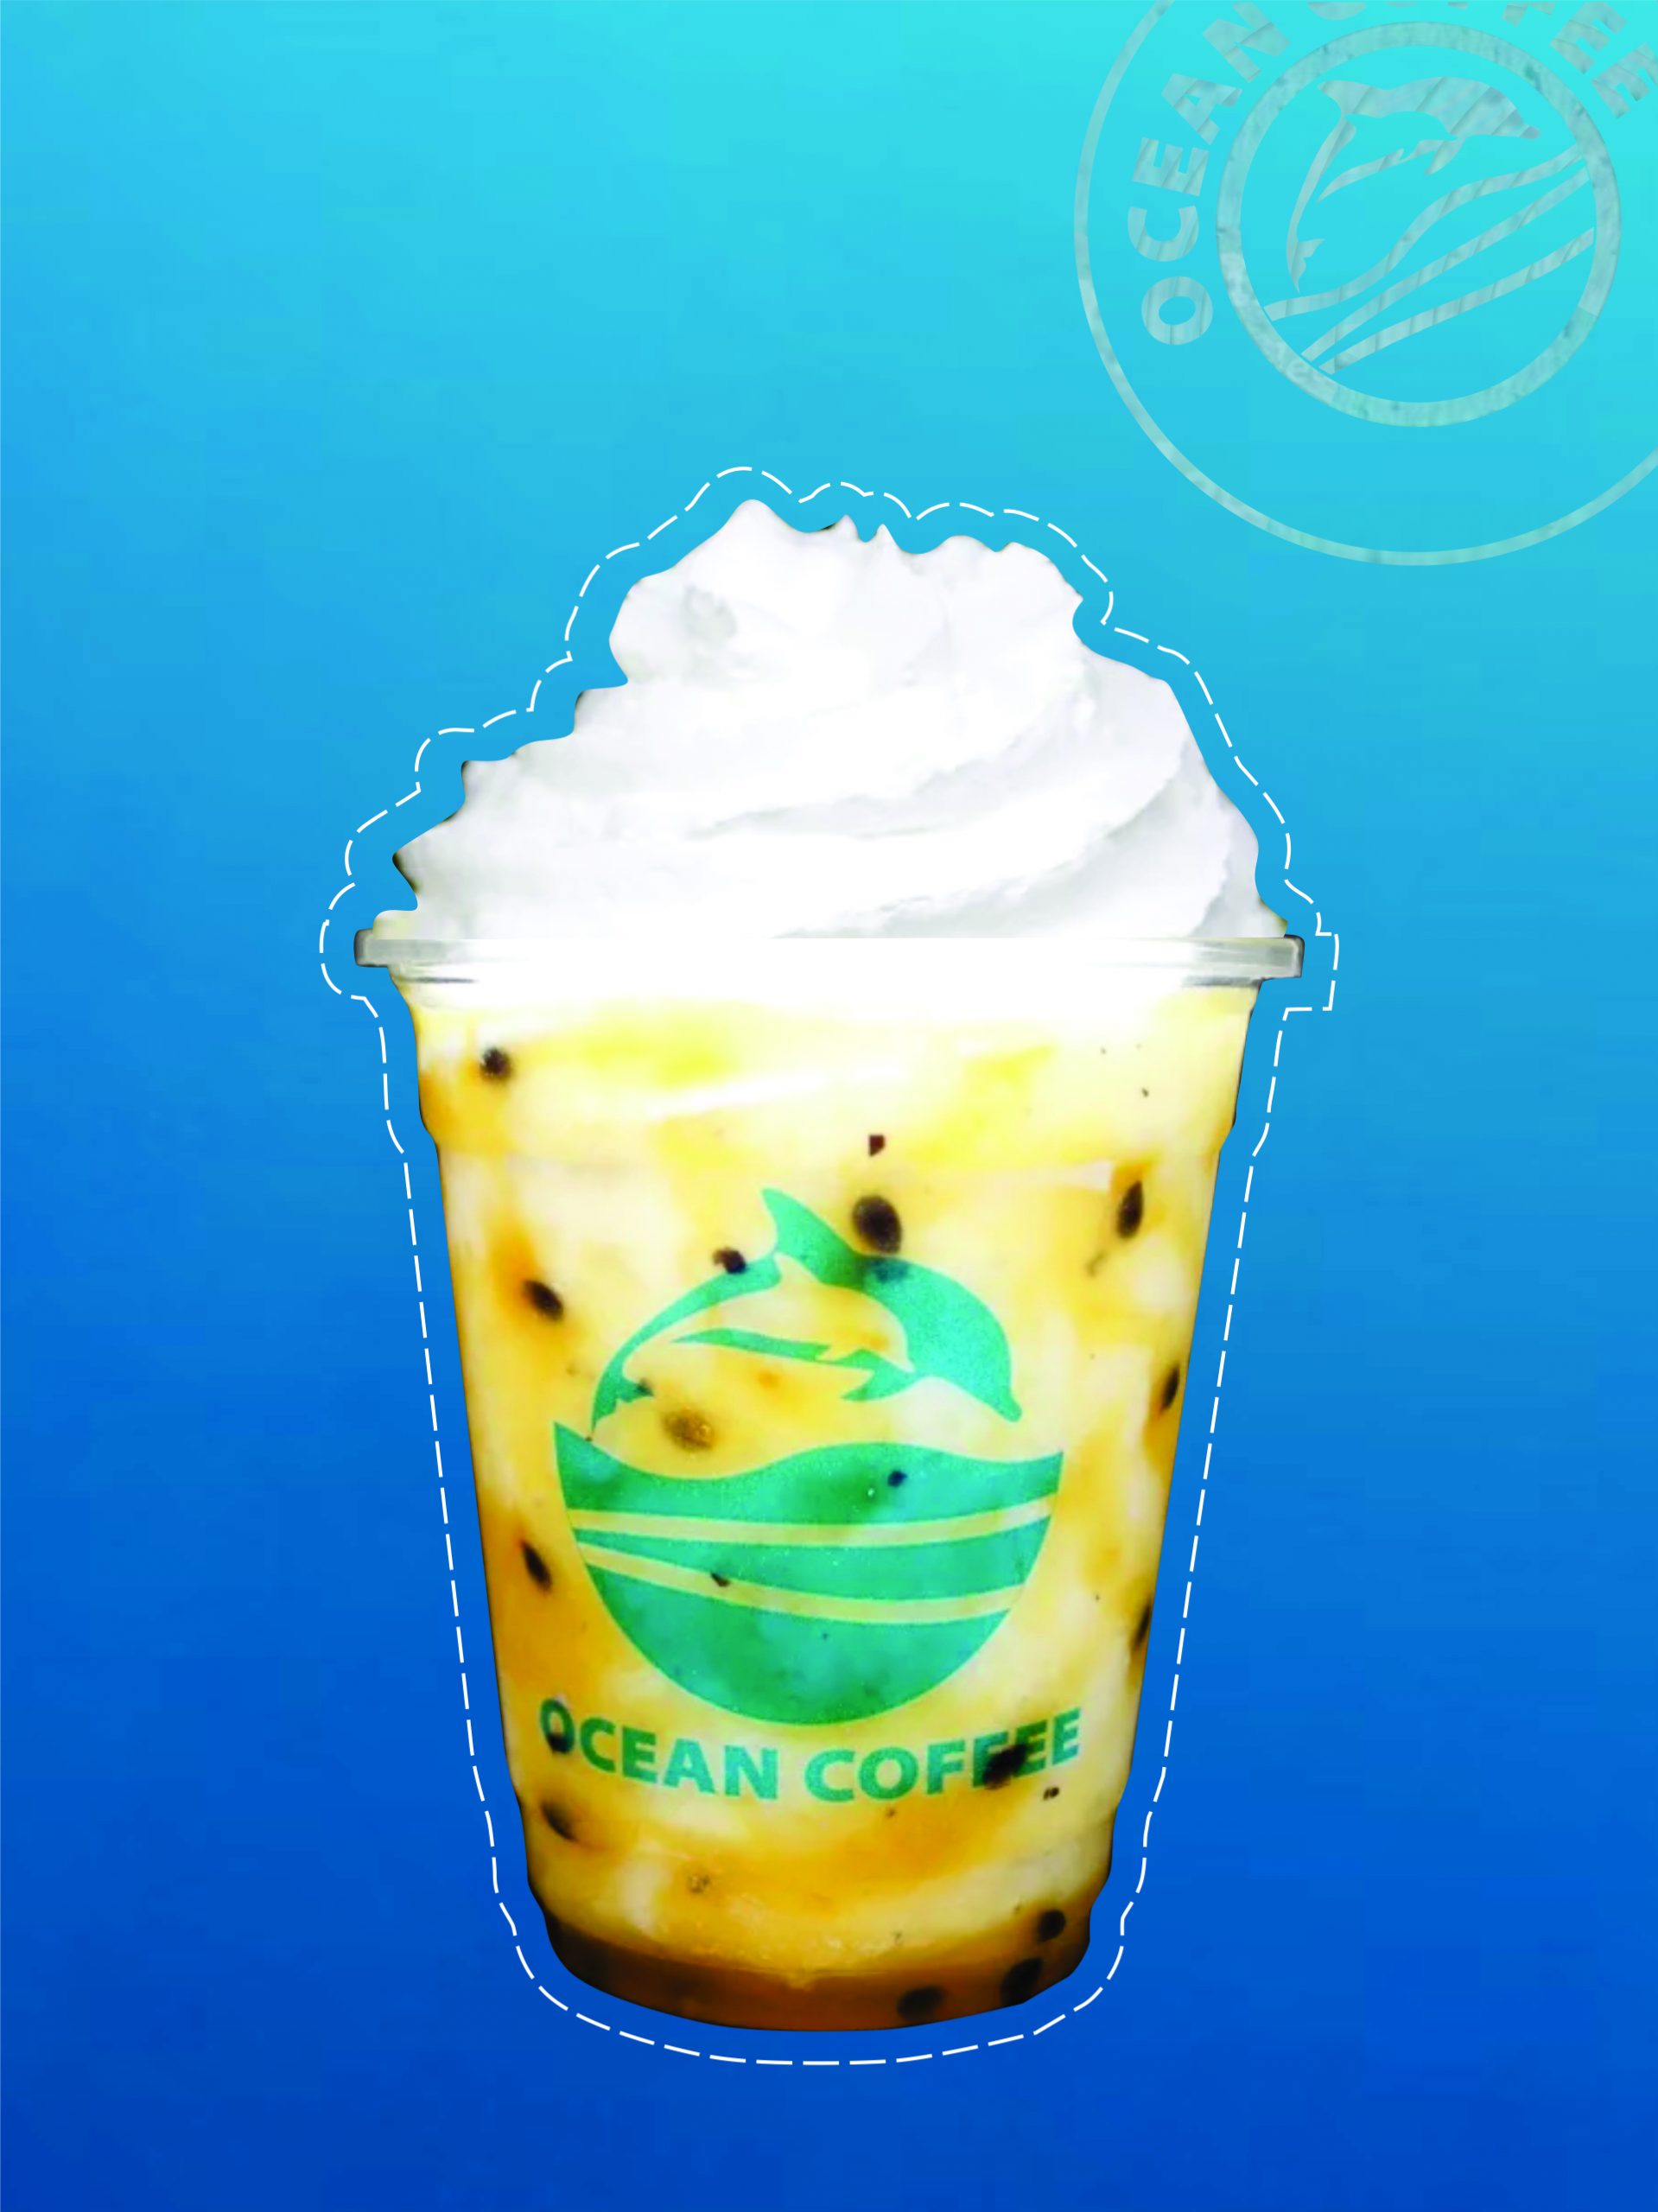 THỰC ĐƠN OCEAN COFFEE